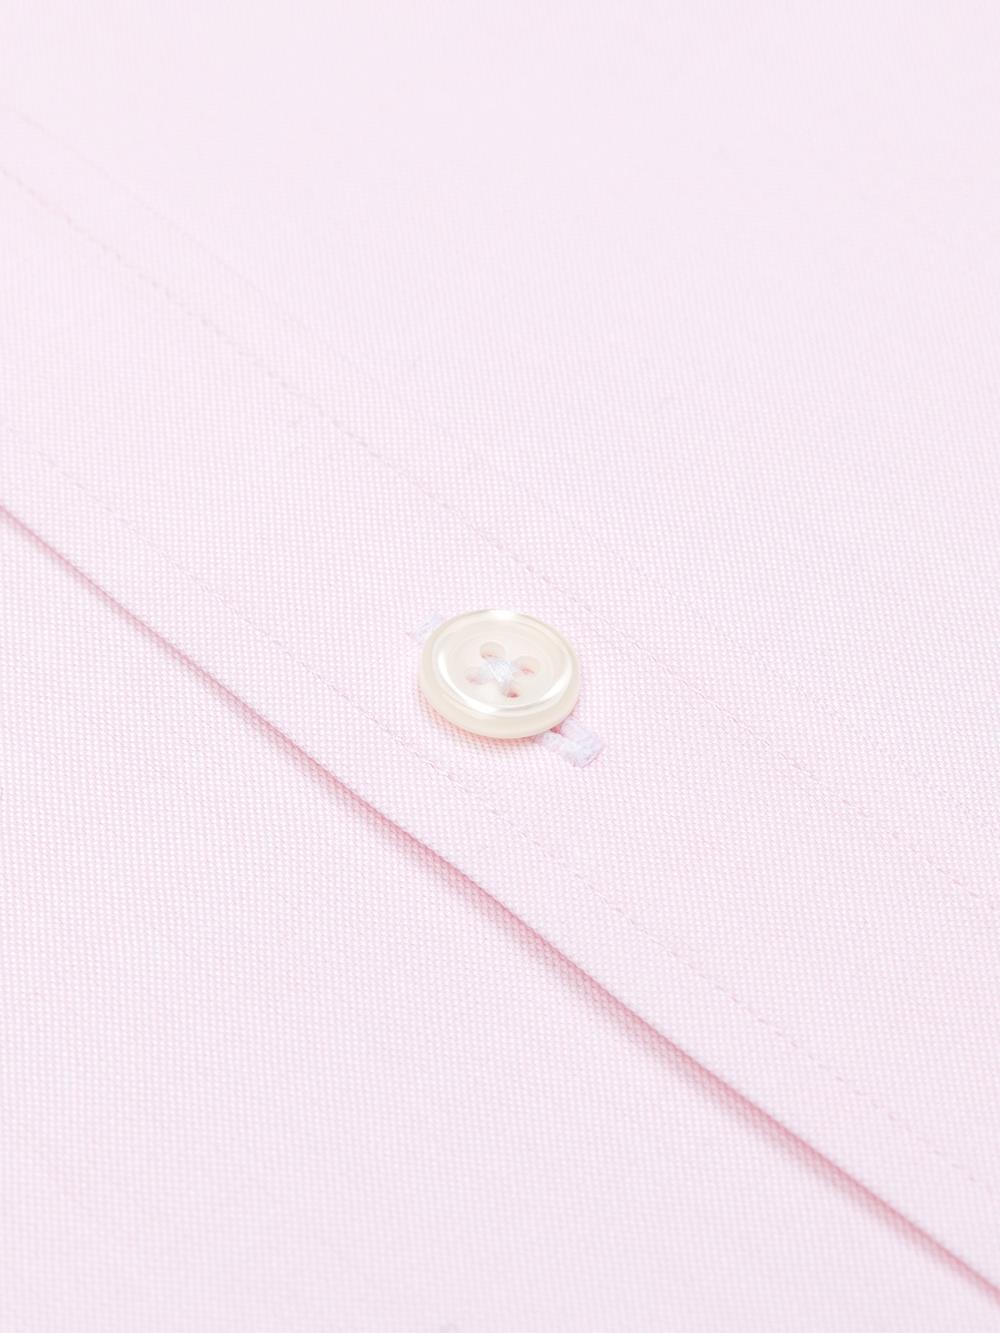 Camisa pin point rosa - Cuello Abotonado